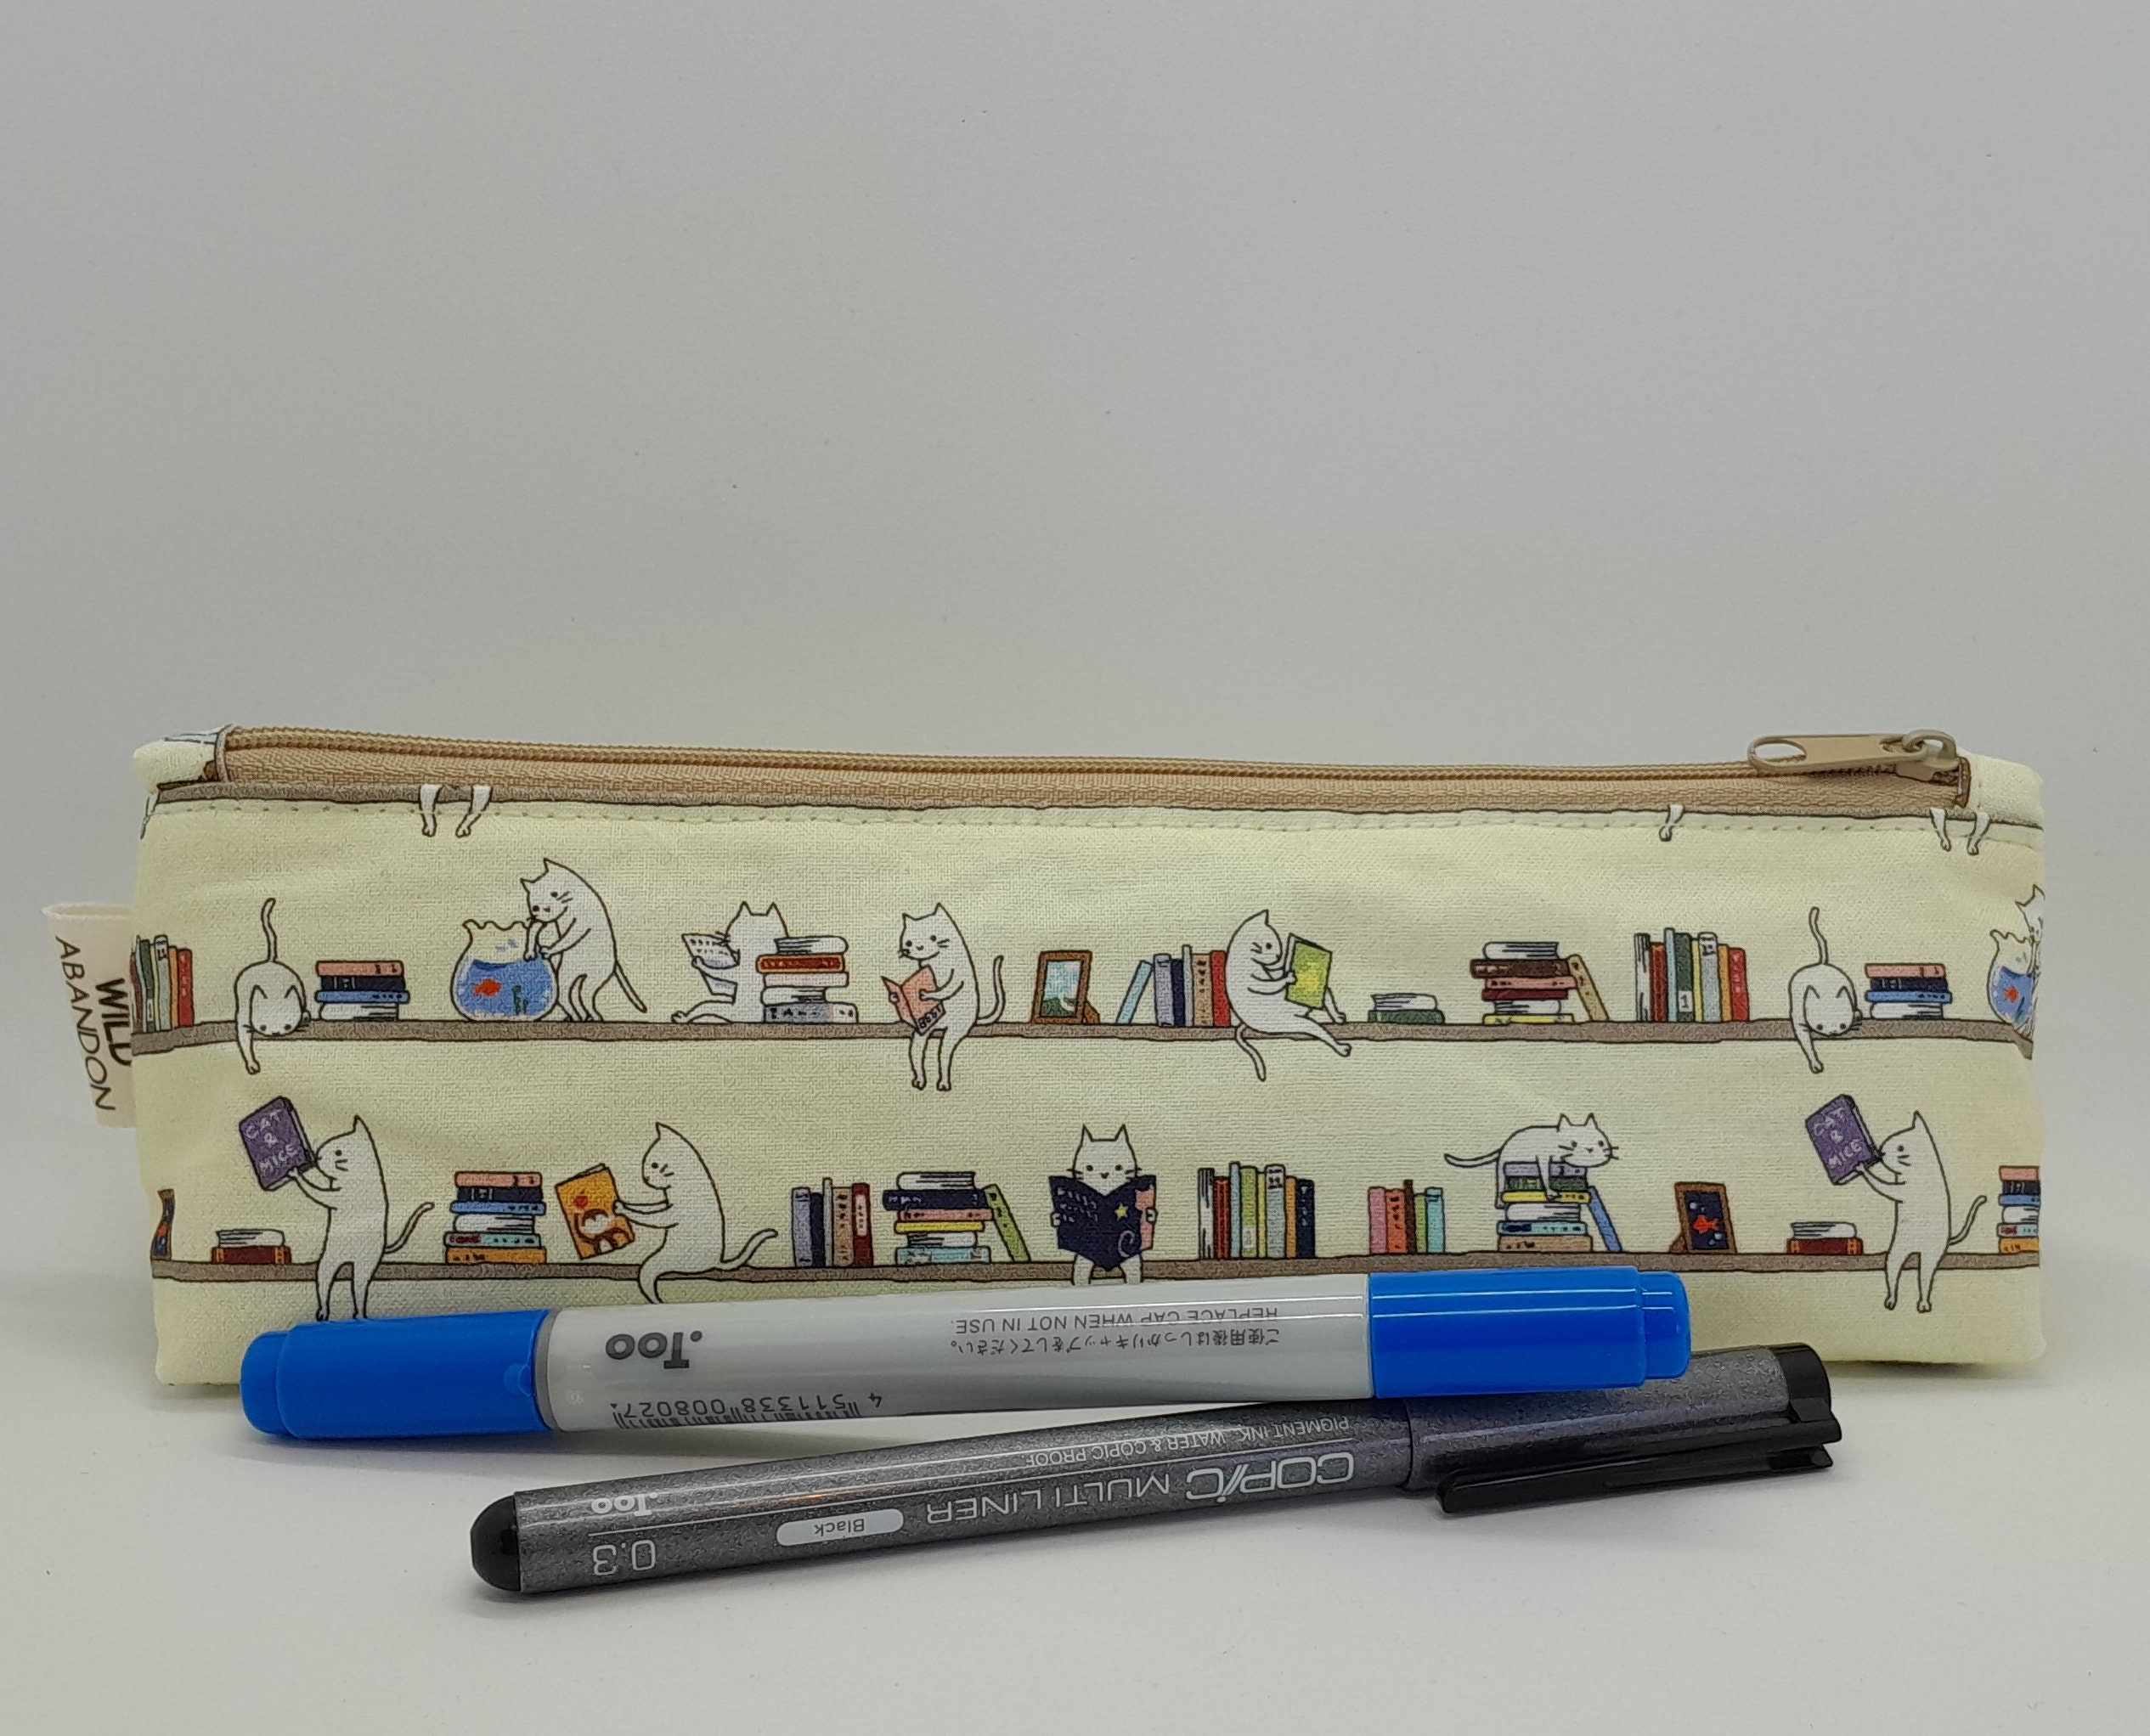 Cute Cat Pencil Case - Catify Co